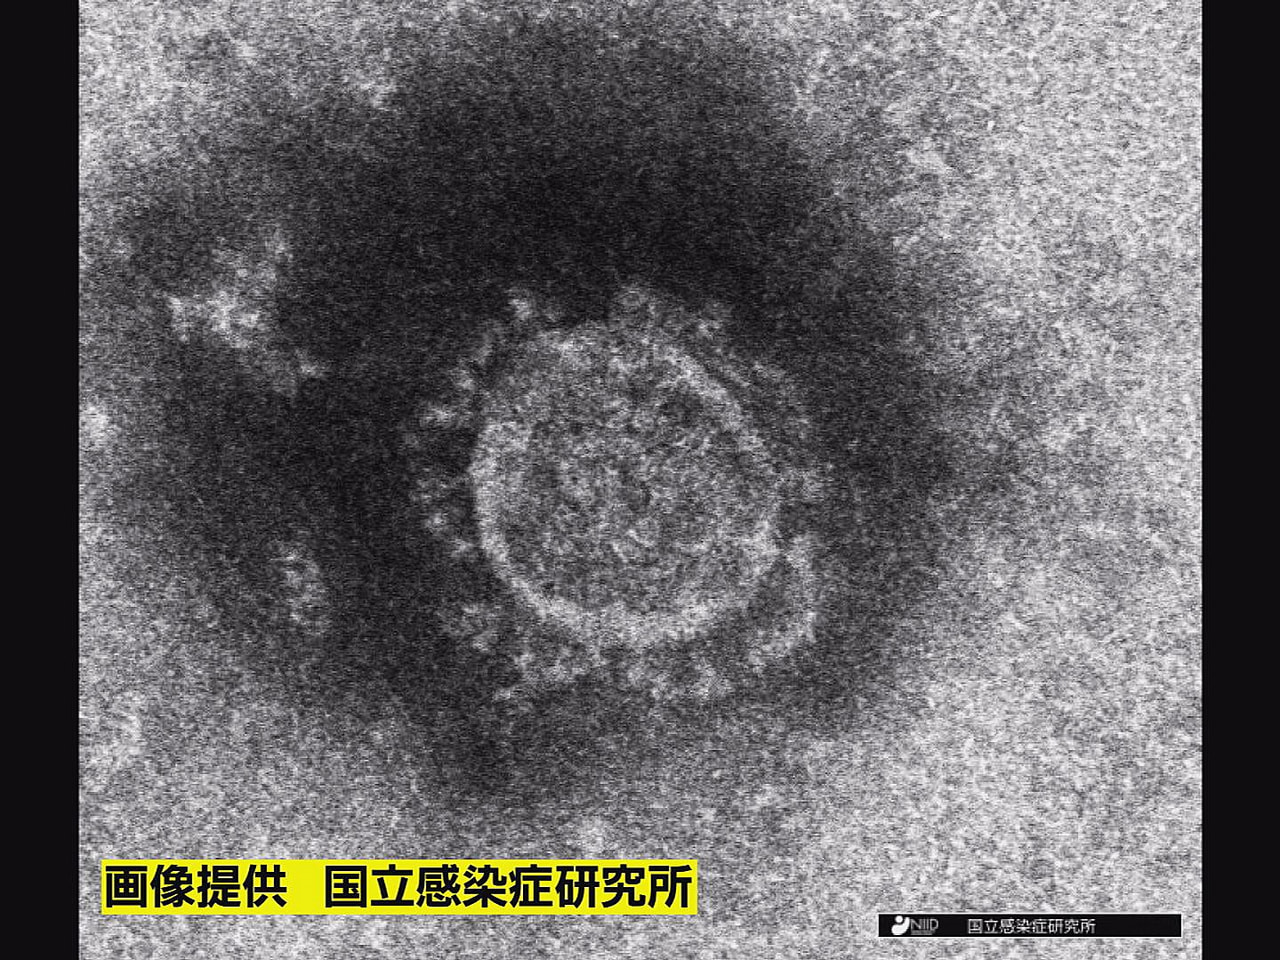 岐阜県は２日、新型コロナウイルスの感染が新たに１人確認されたと発表しました。 感...